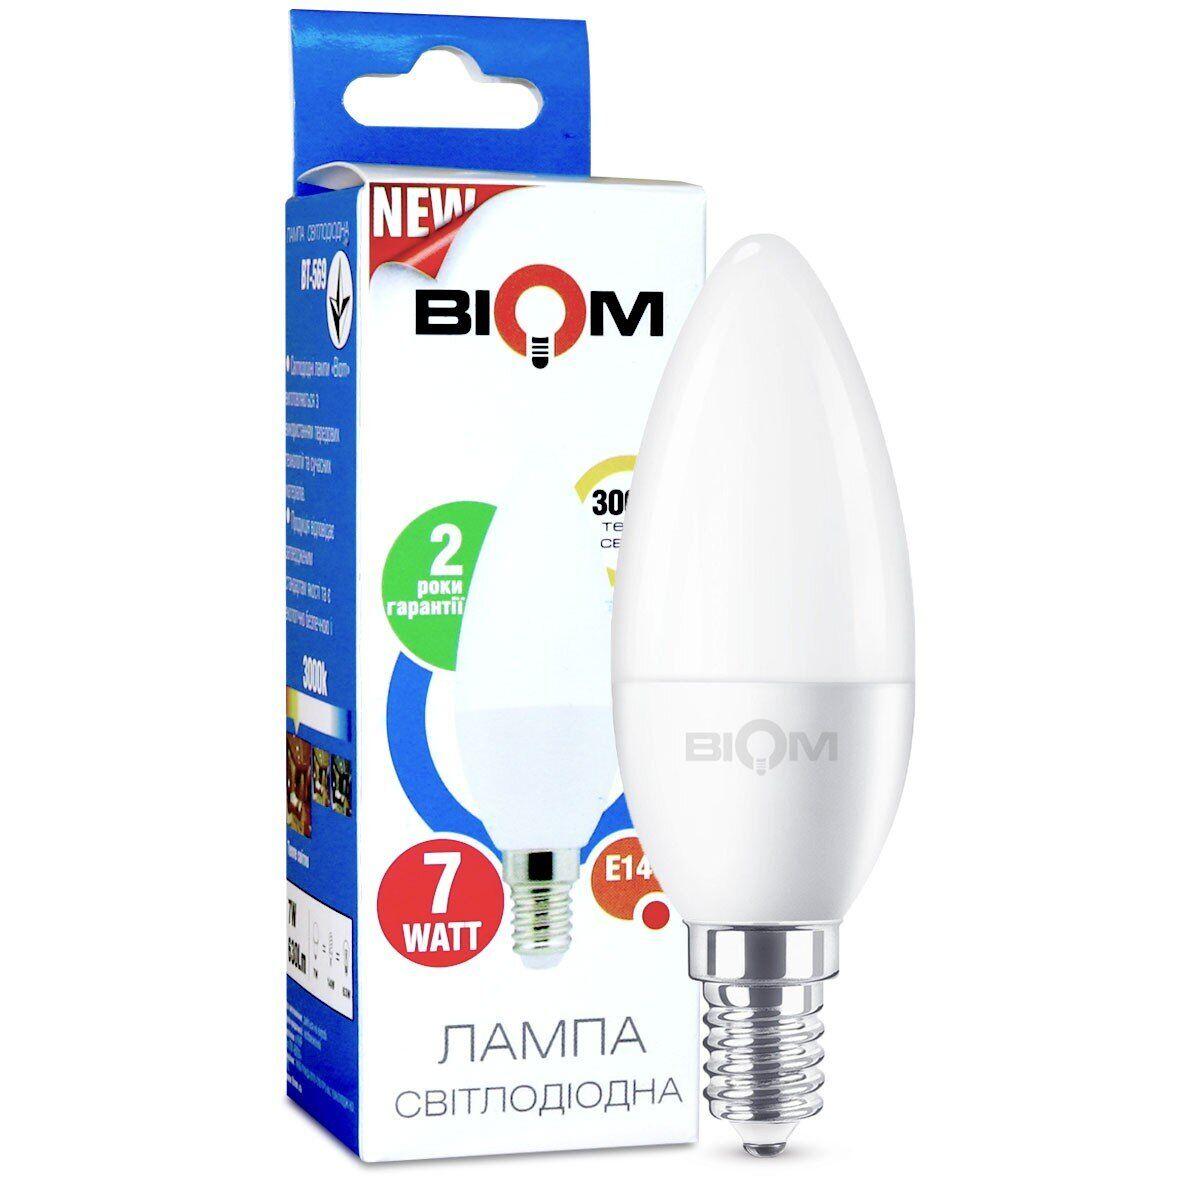 Світлодіодна лампа свічка 7W Biom BT-569 тепле світло 3000К C37 цоколь E14